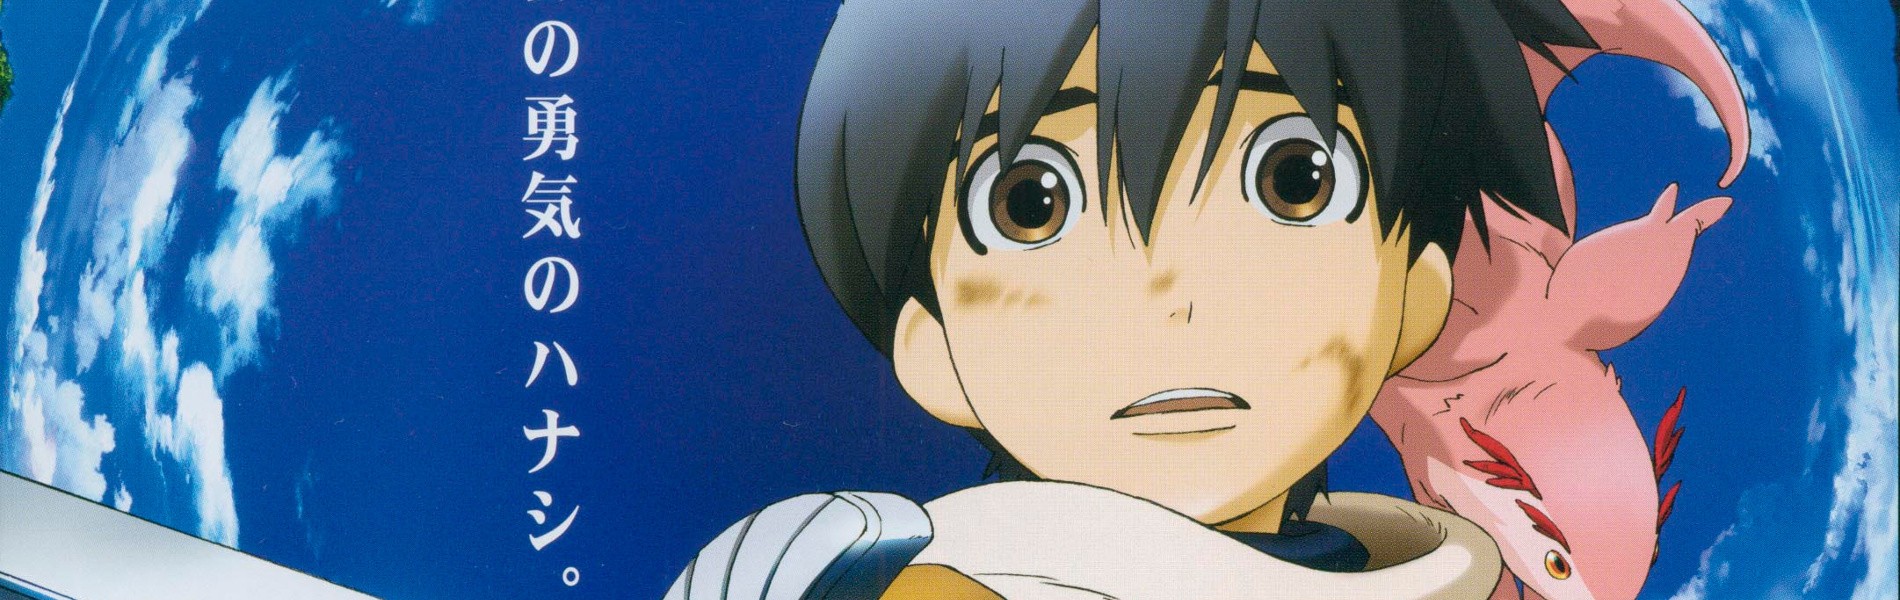 post animes on X: Anime: Hachi-nan tte, Sore wa Nai deshou! https